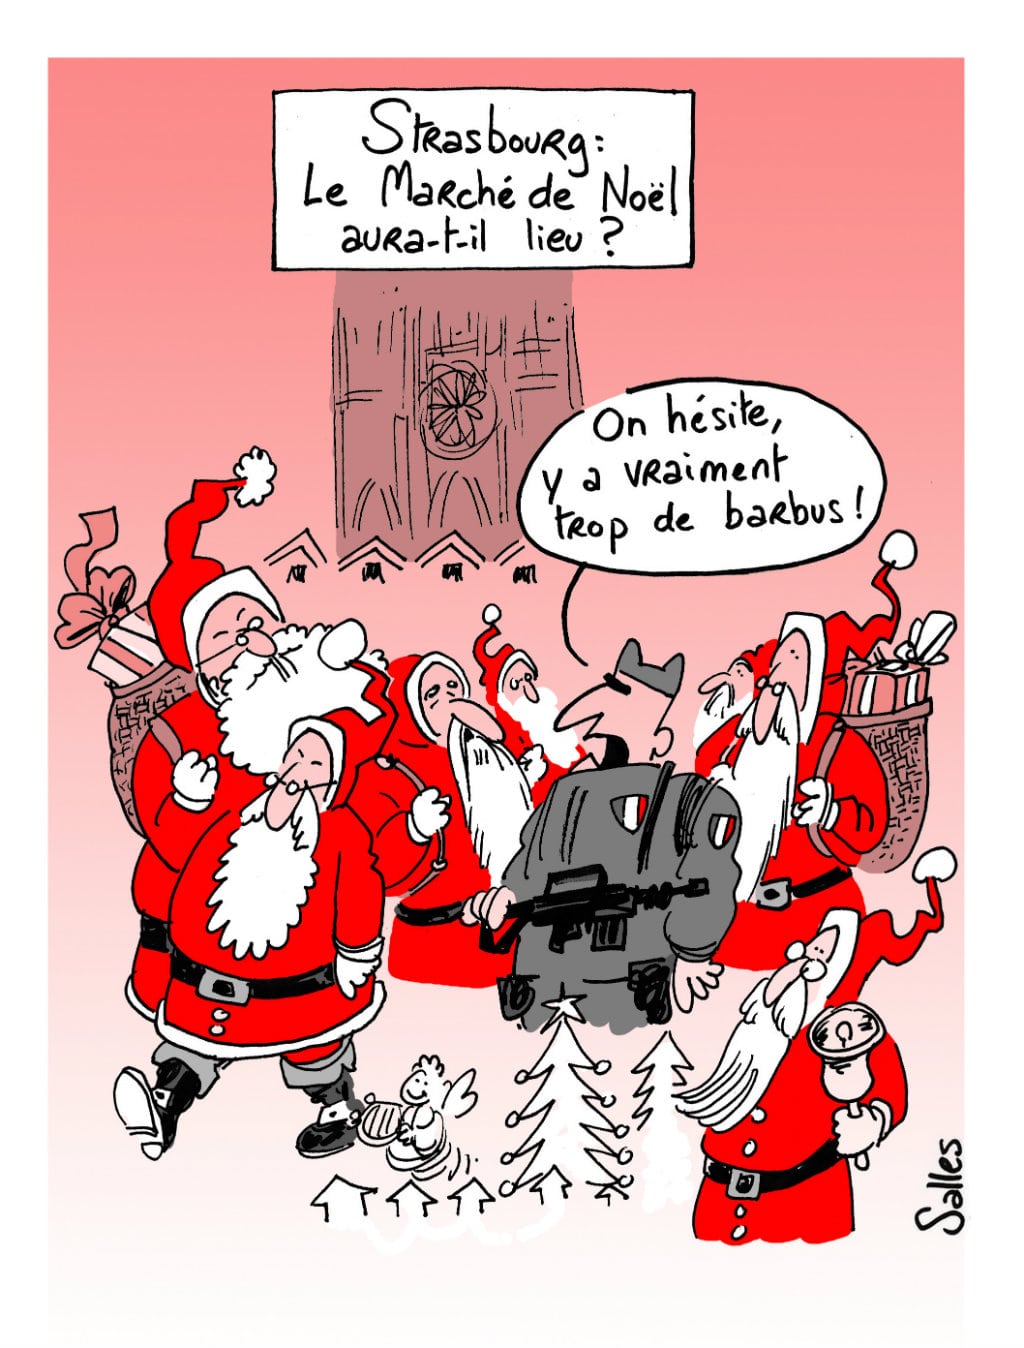 Marché de Noël : pourquoi Strasbourg hésite…